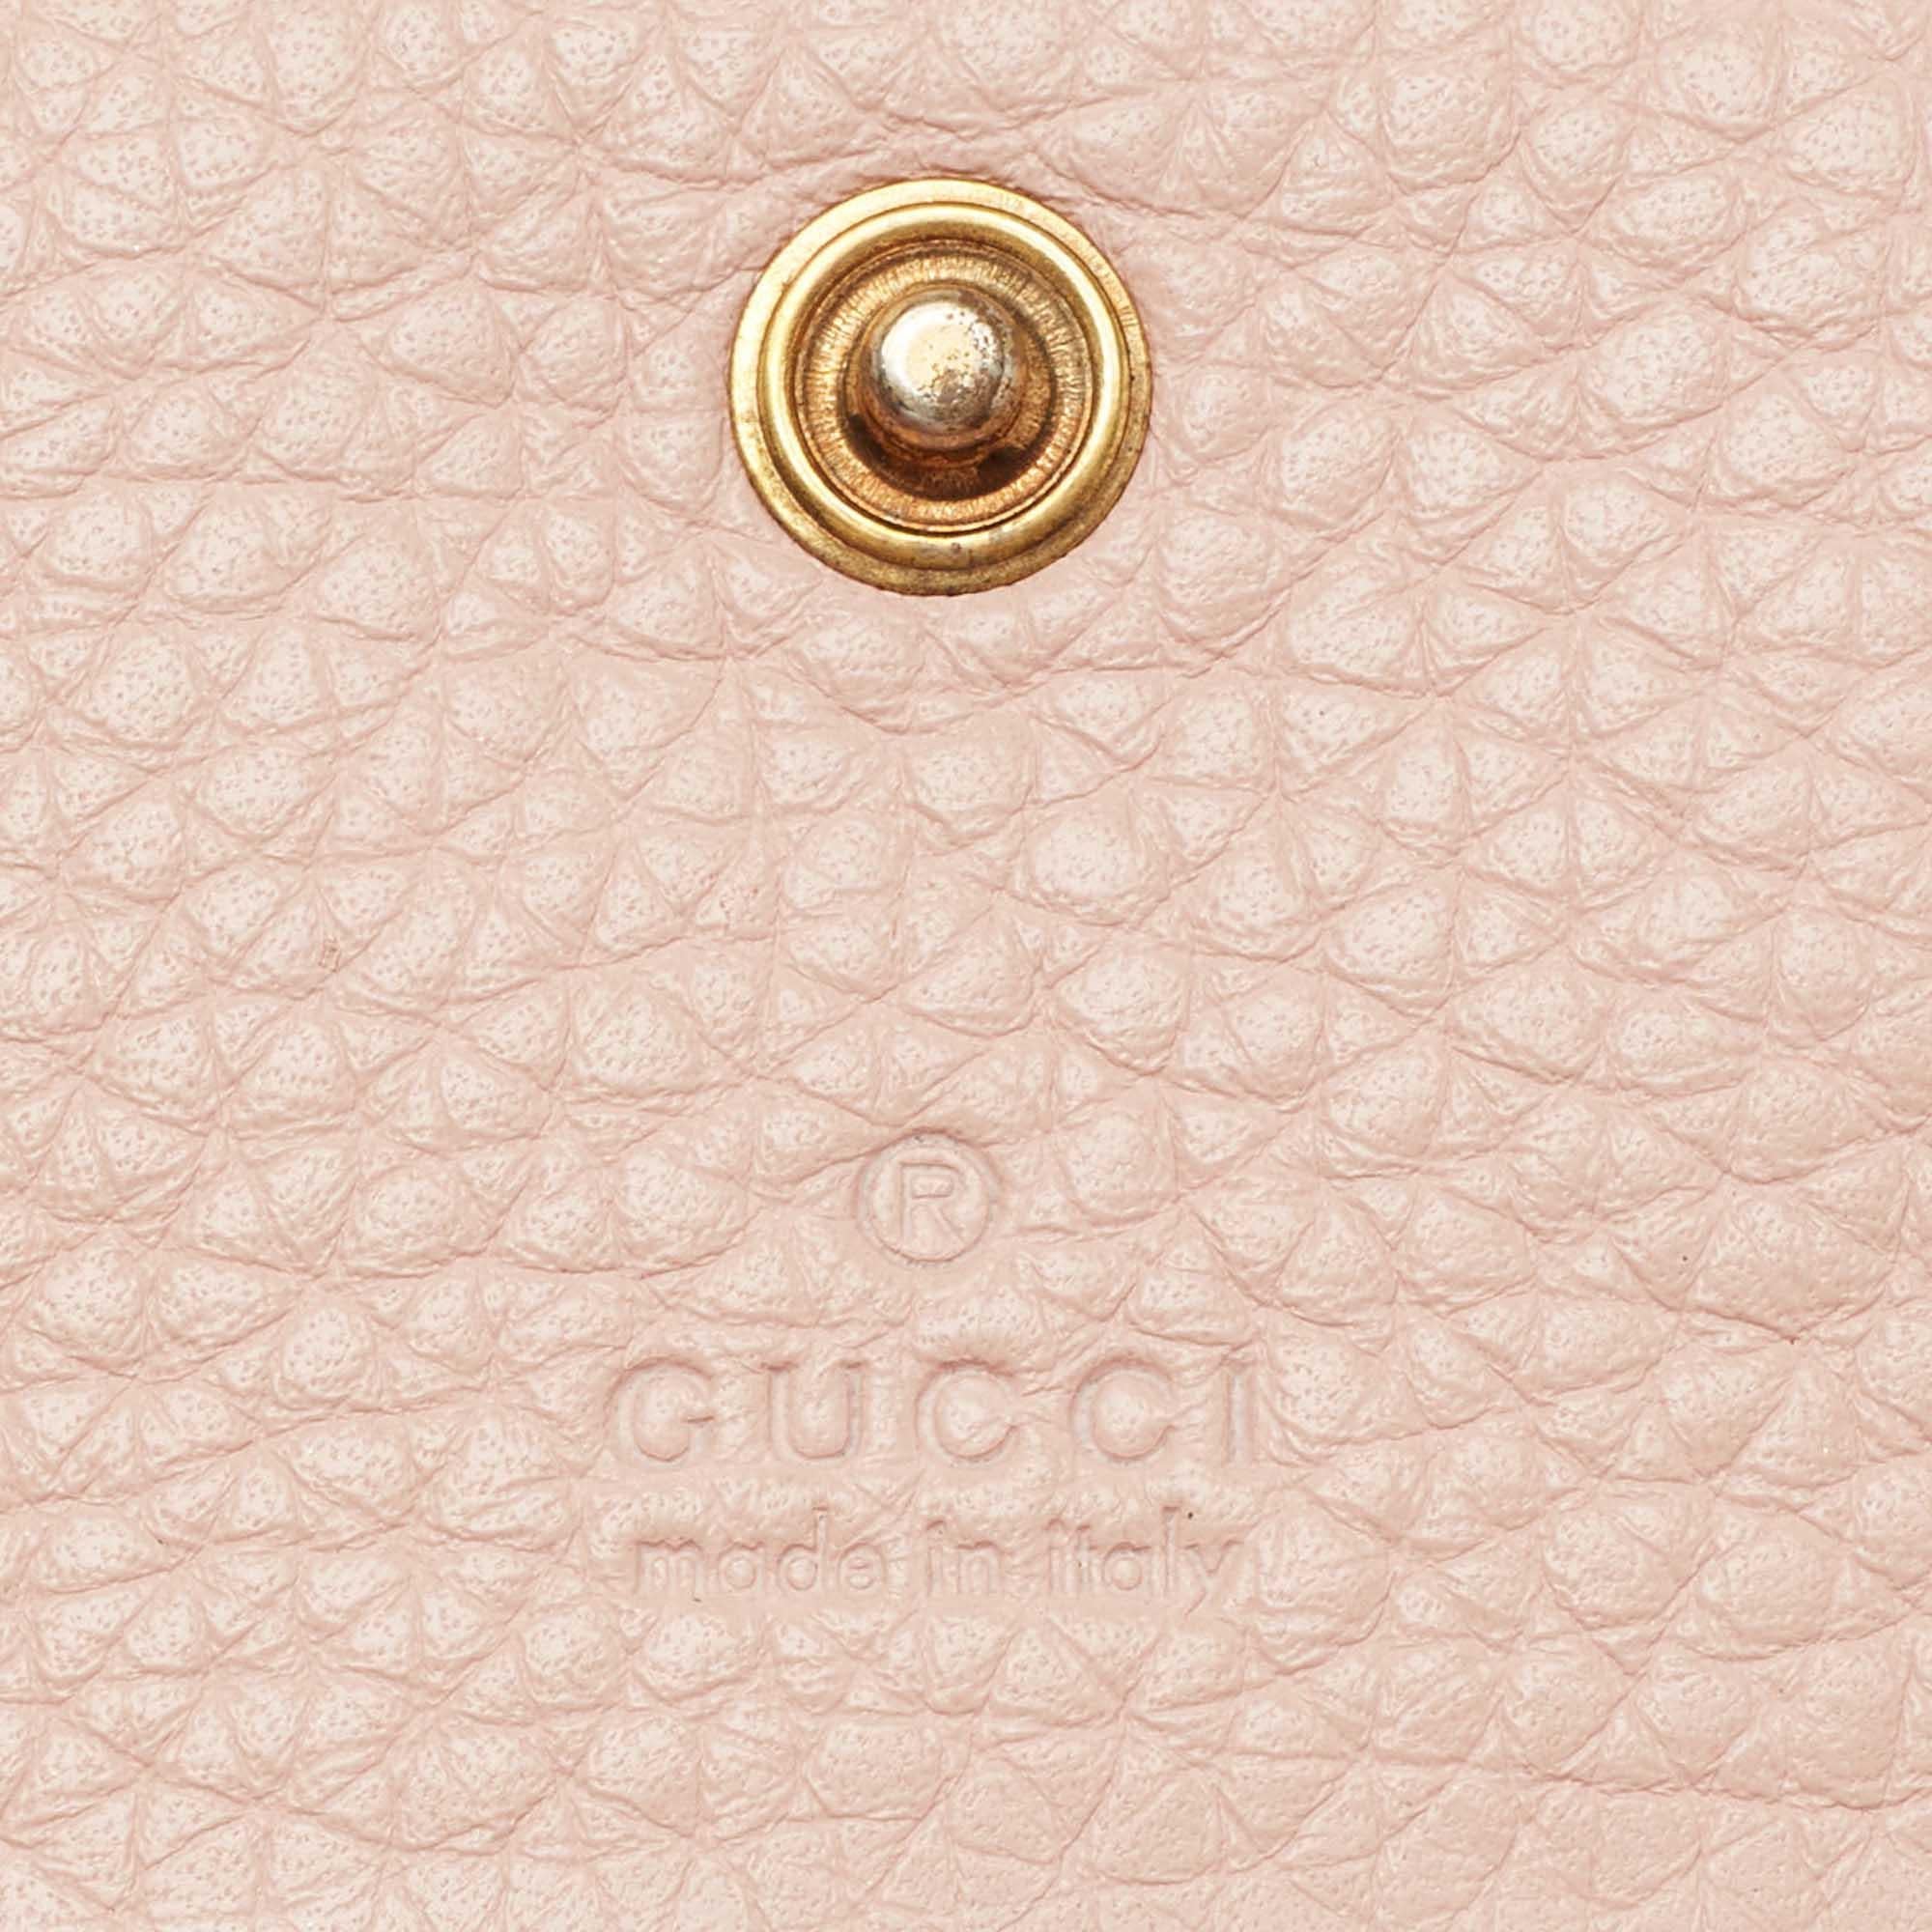 gucci love purse